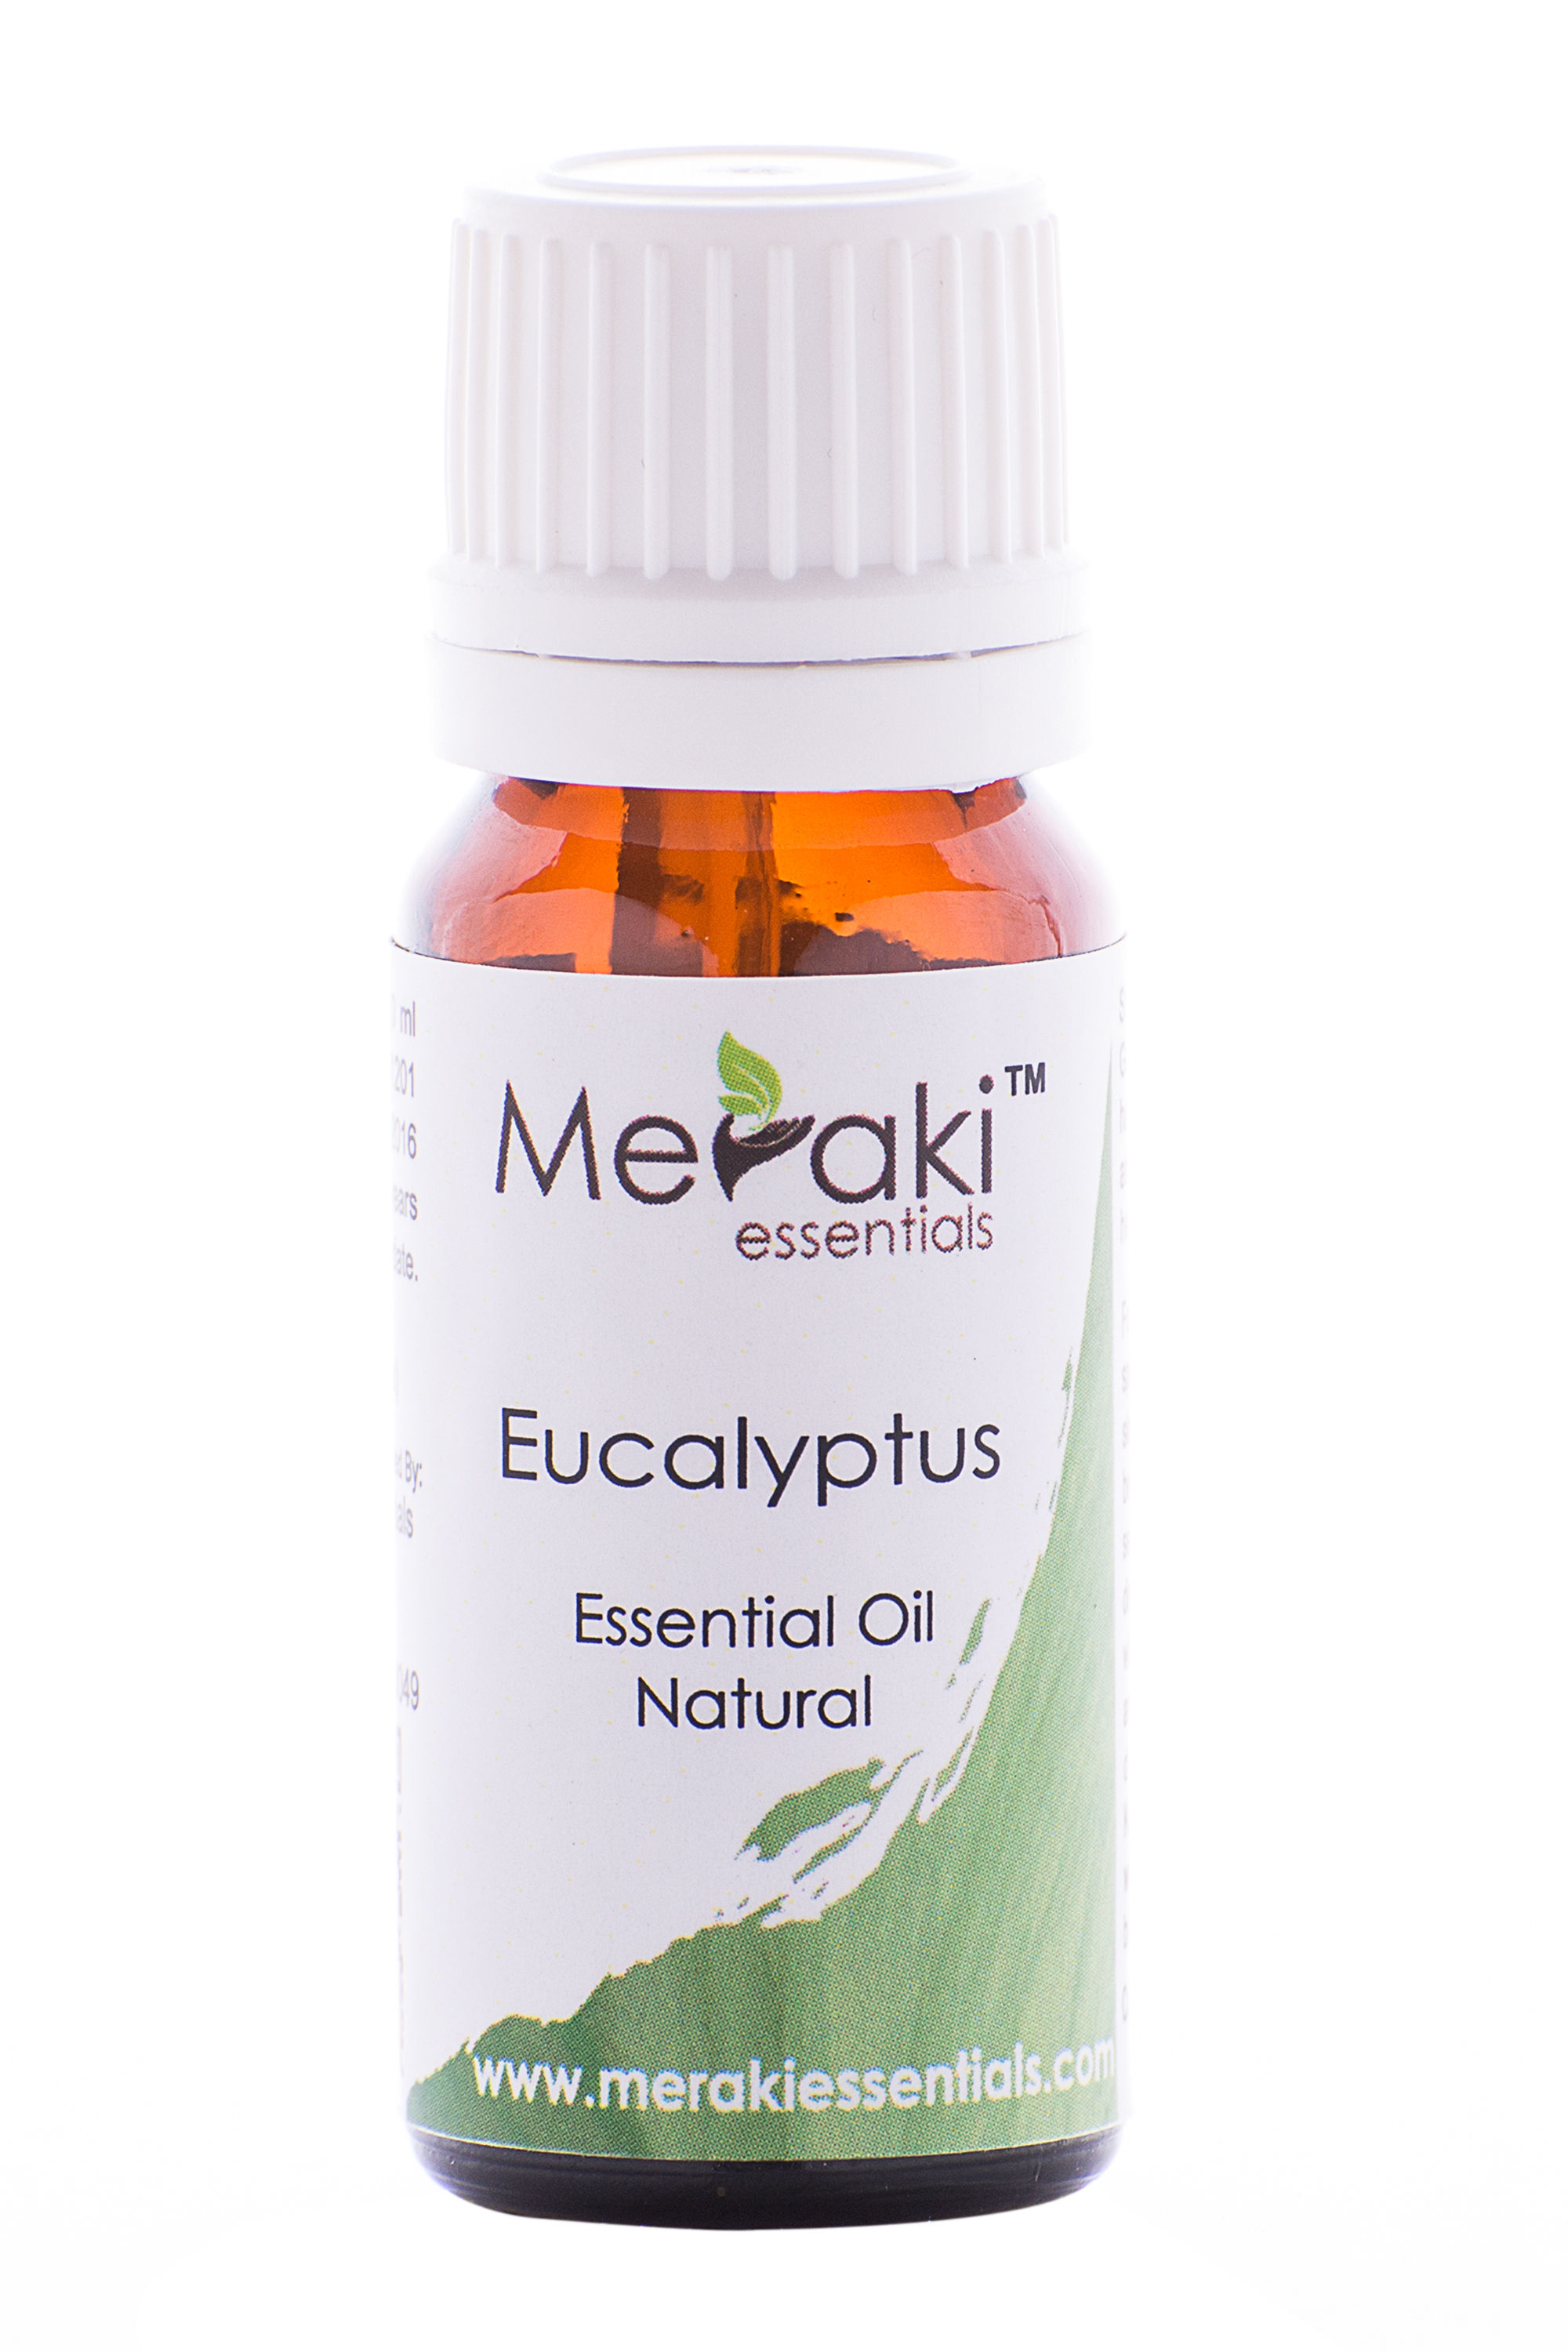 Meraki Essentials Eucalyptus Essential Oil